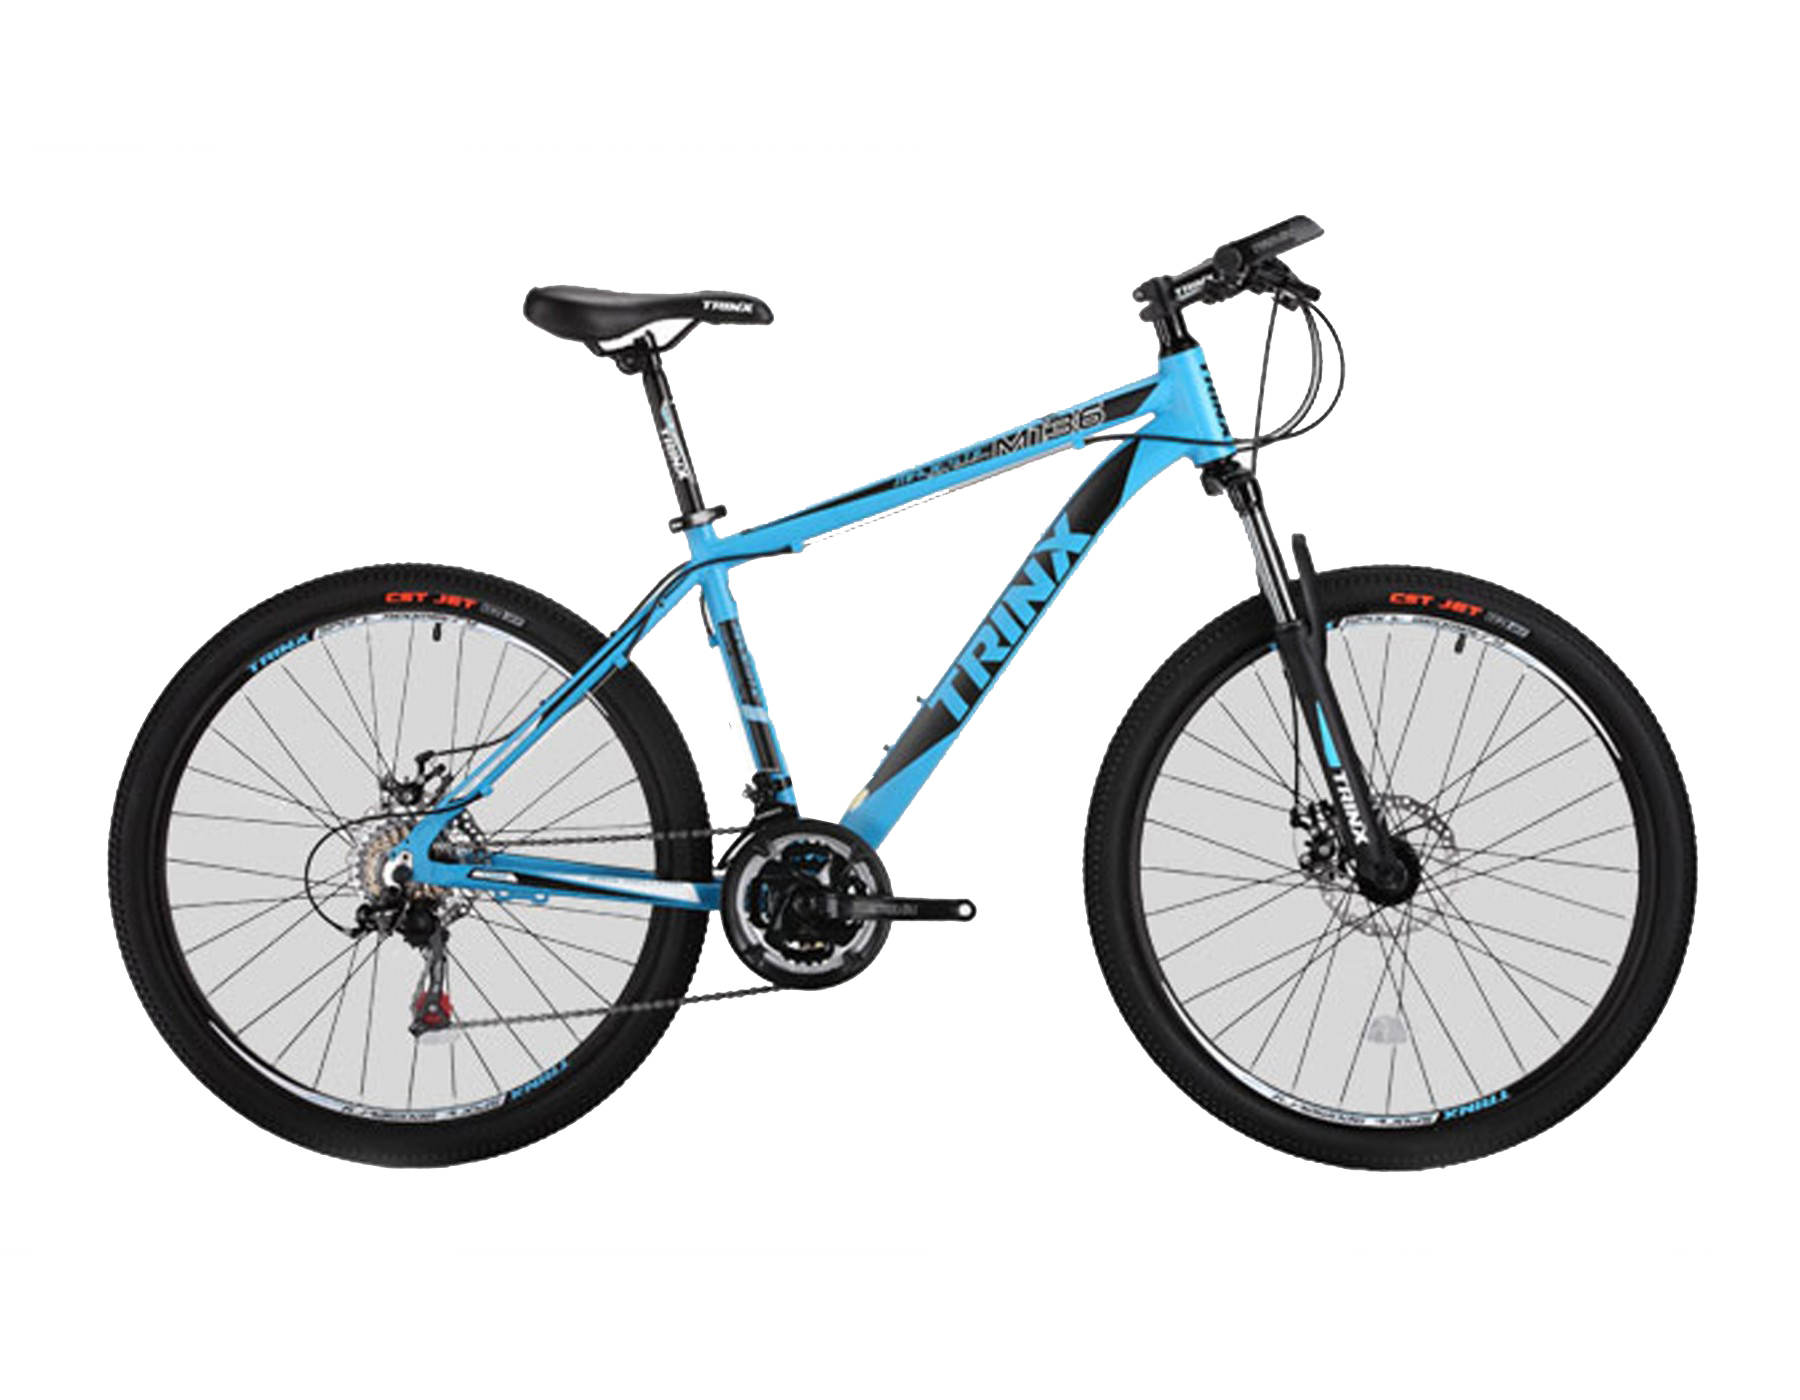 Toan Thang Cycles - Shopxedap -Xe đạp địa hình TRINX MAJESTIC M136 2016